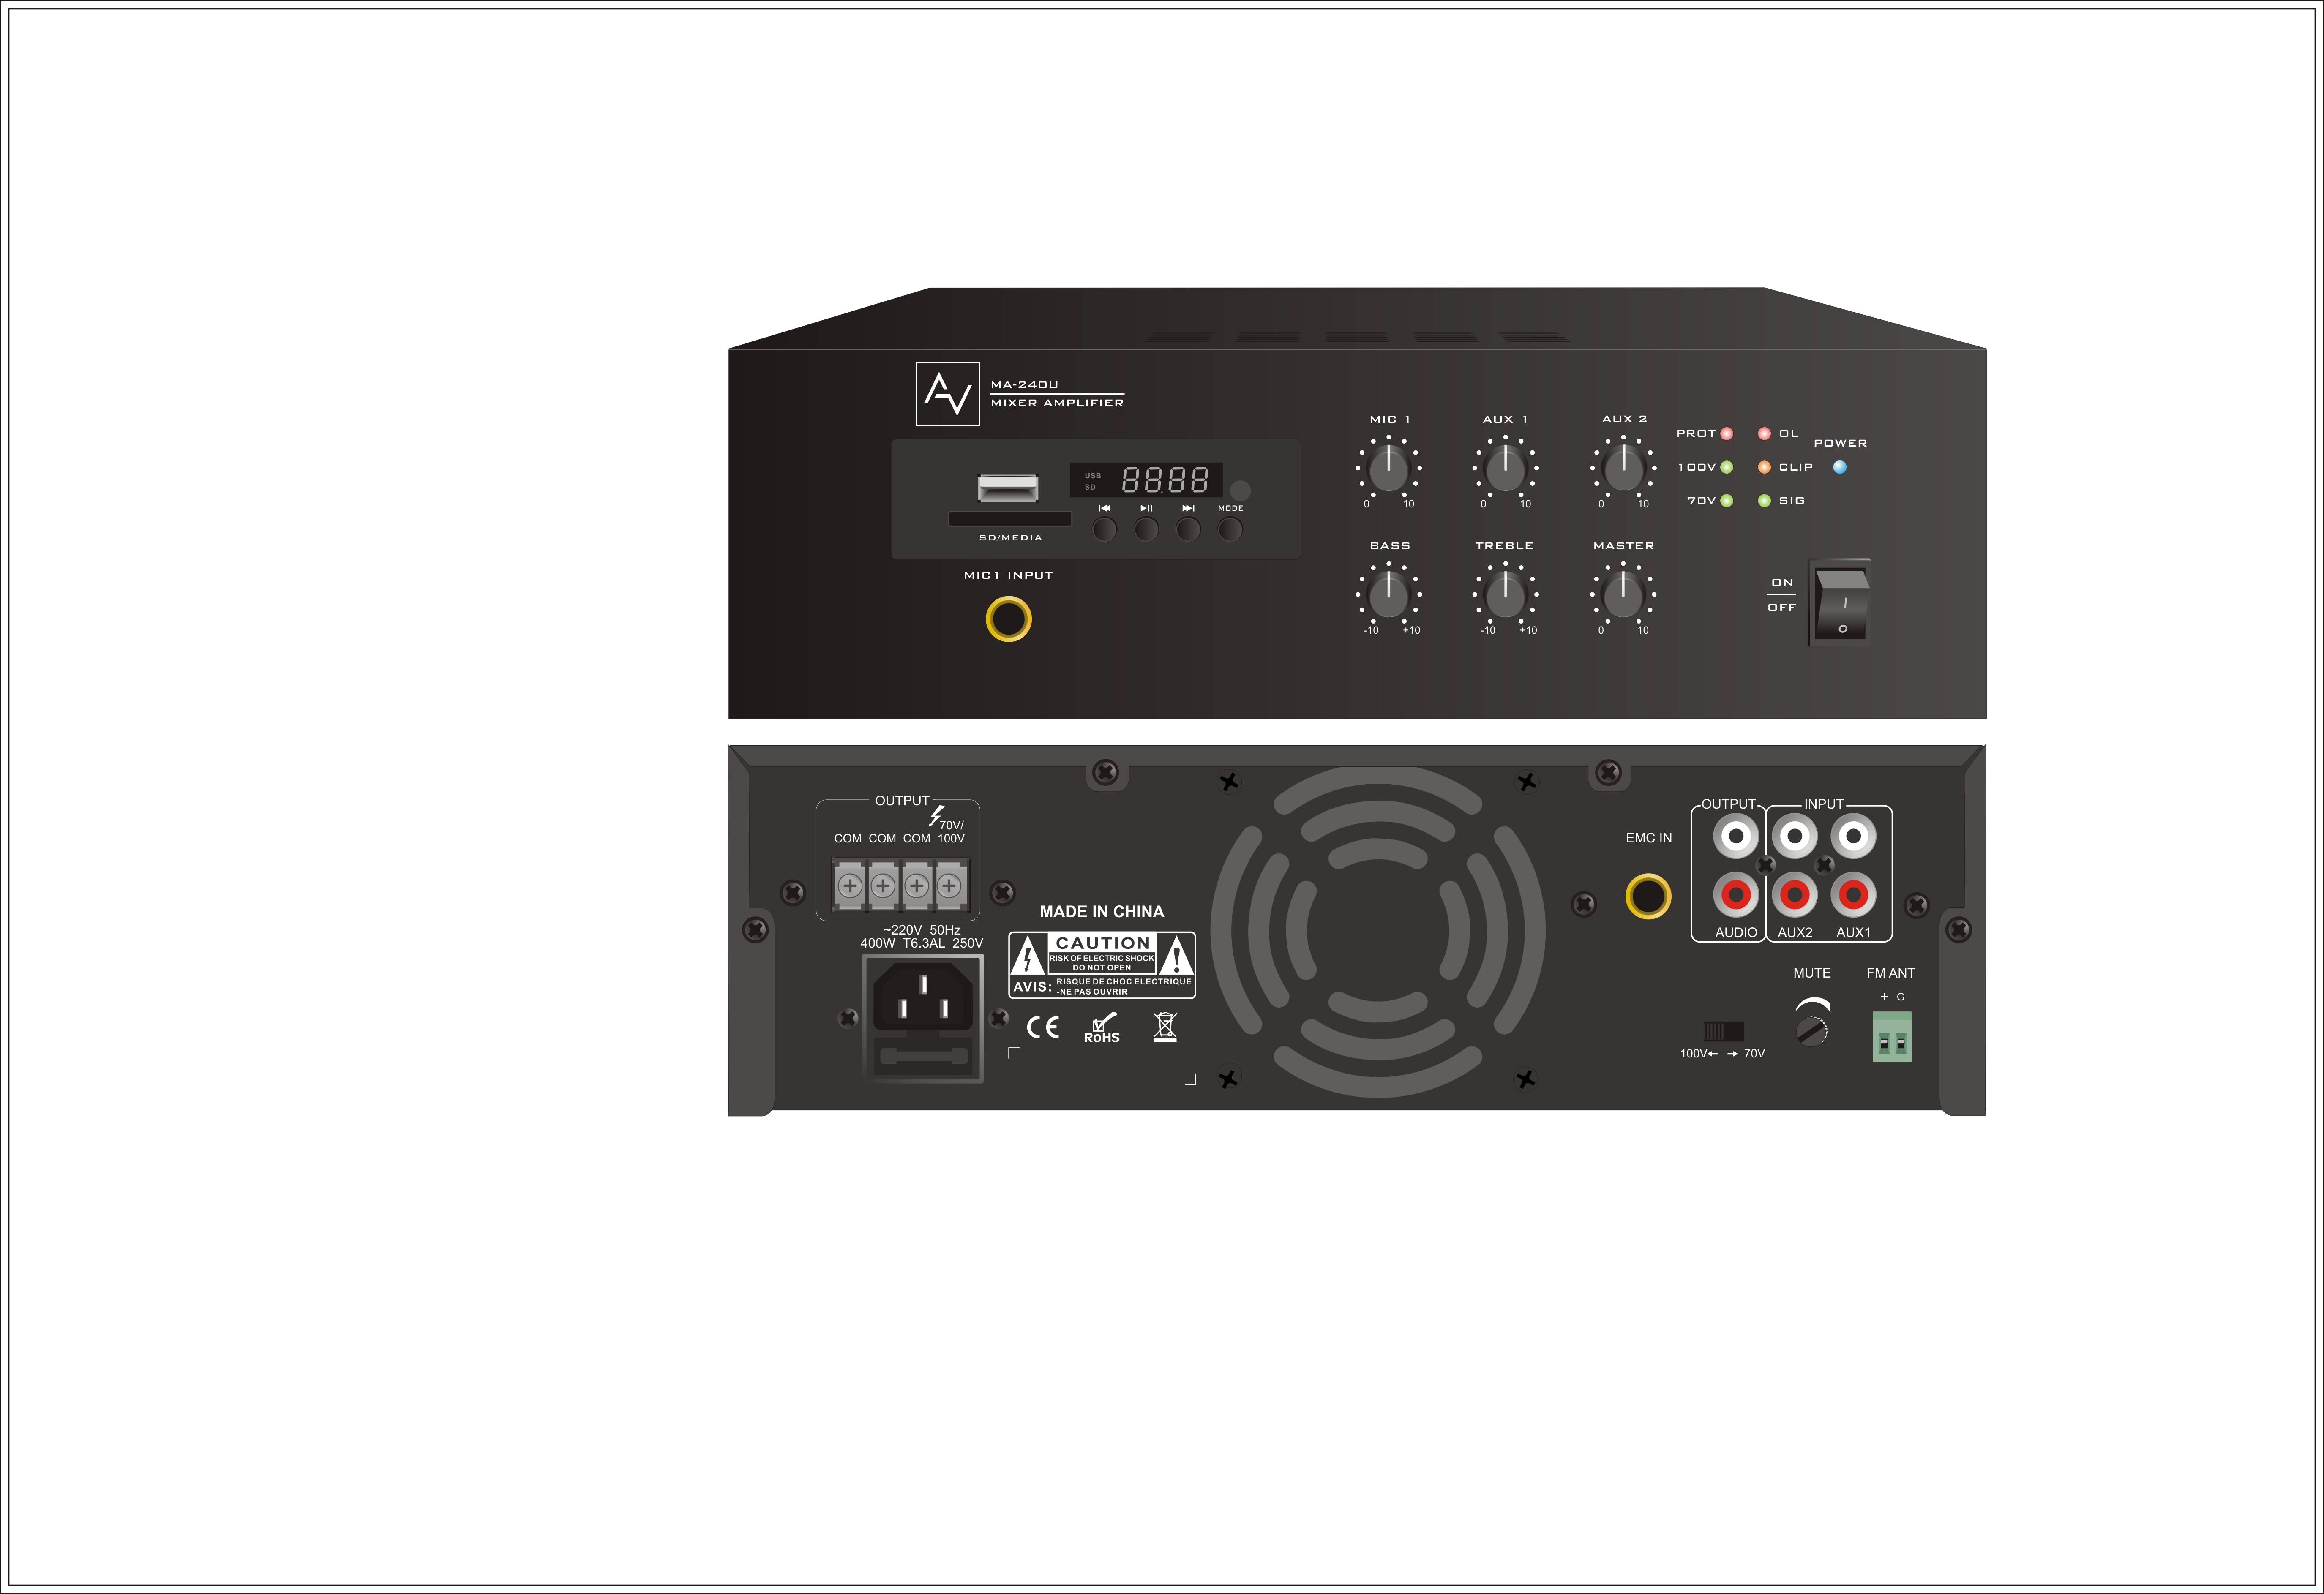 Mixer Amplifier 240W AV MA-240U